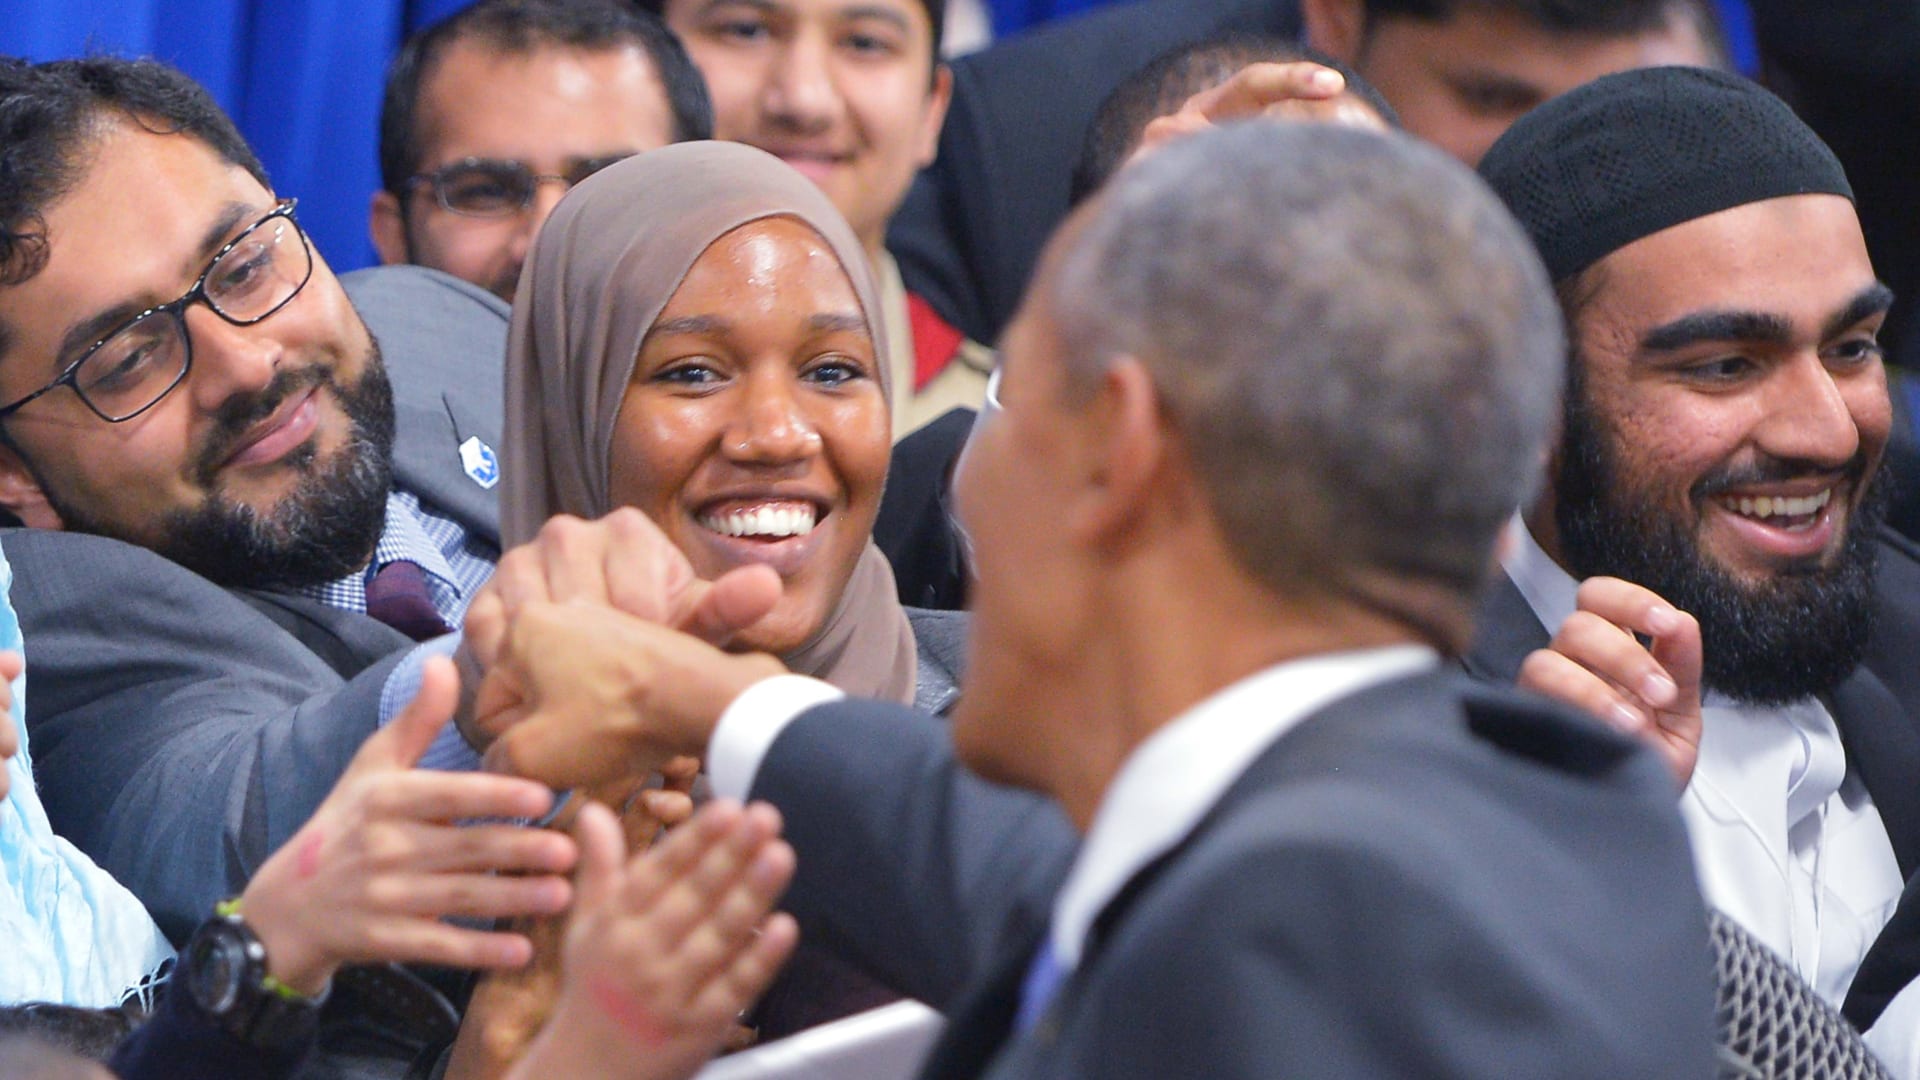 بالصور.. أوباما في مسجد أمريكي لأول مرة: استهداف الإسلام هو استهداف لكل الأديان